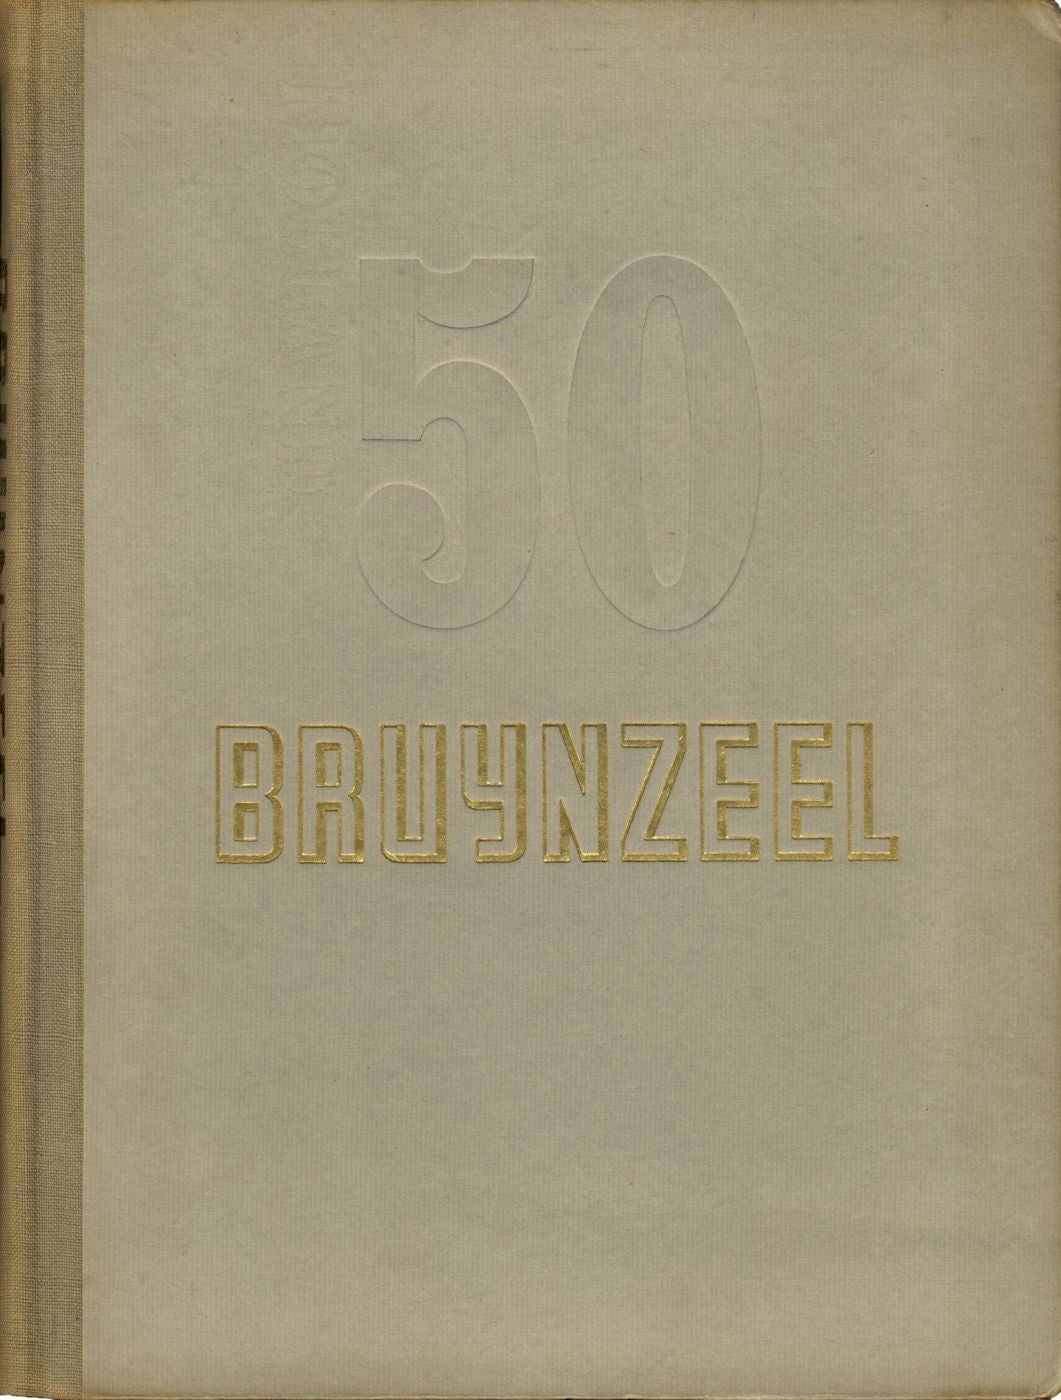 50 Jaar Bruynzeel (50 Years of Bruynzeel) 1897-1947 (Thijsen Corporate Photography)